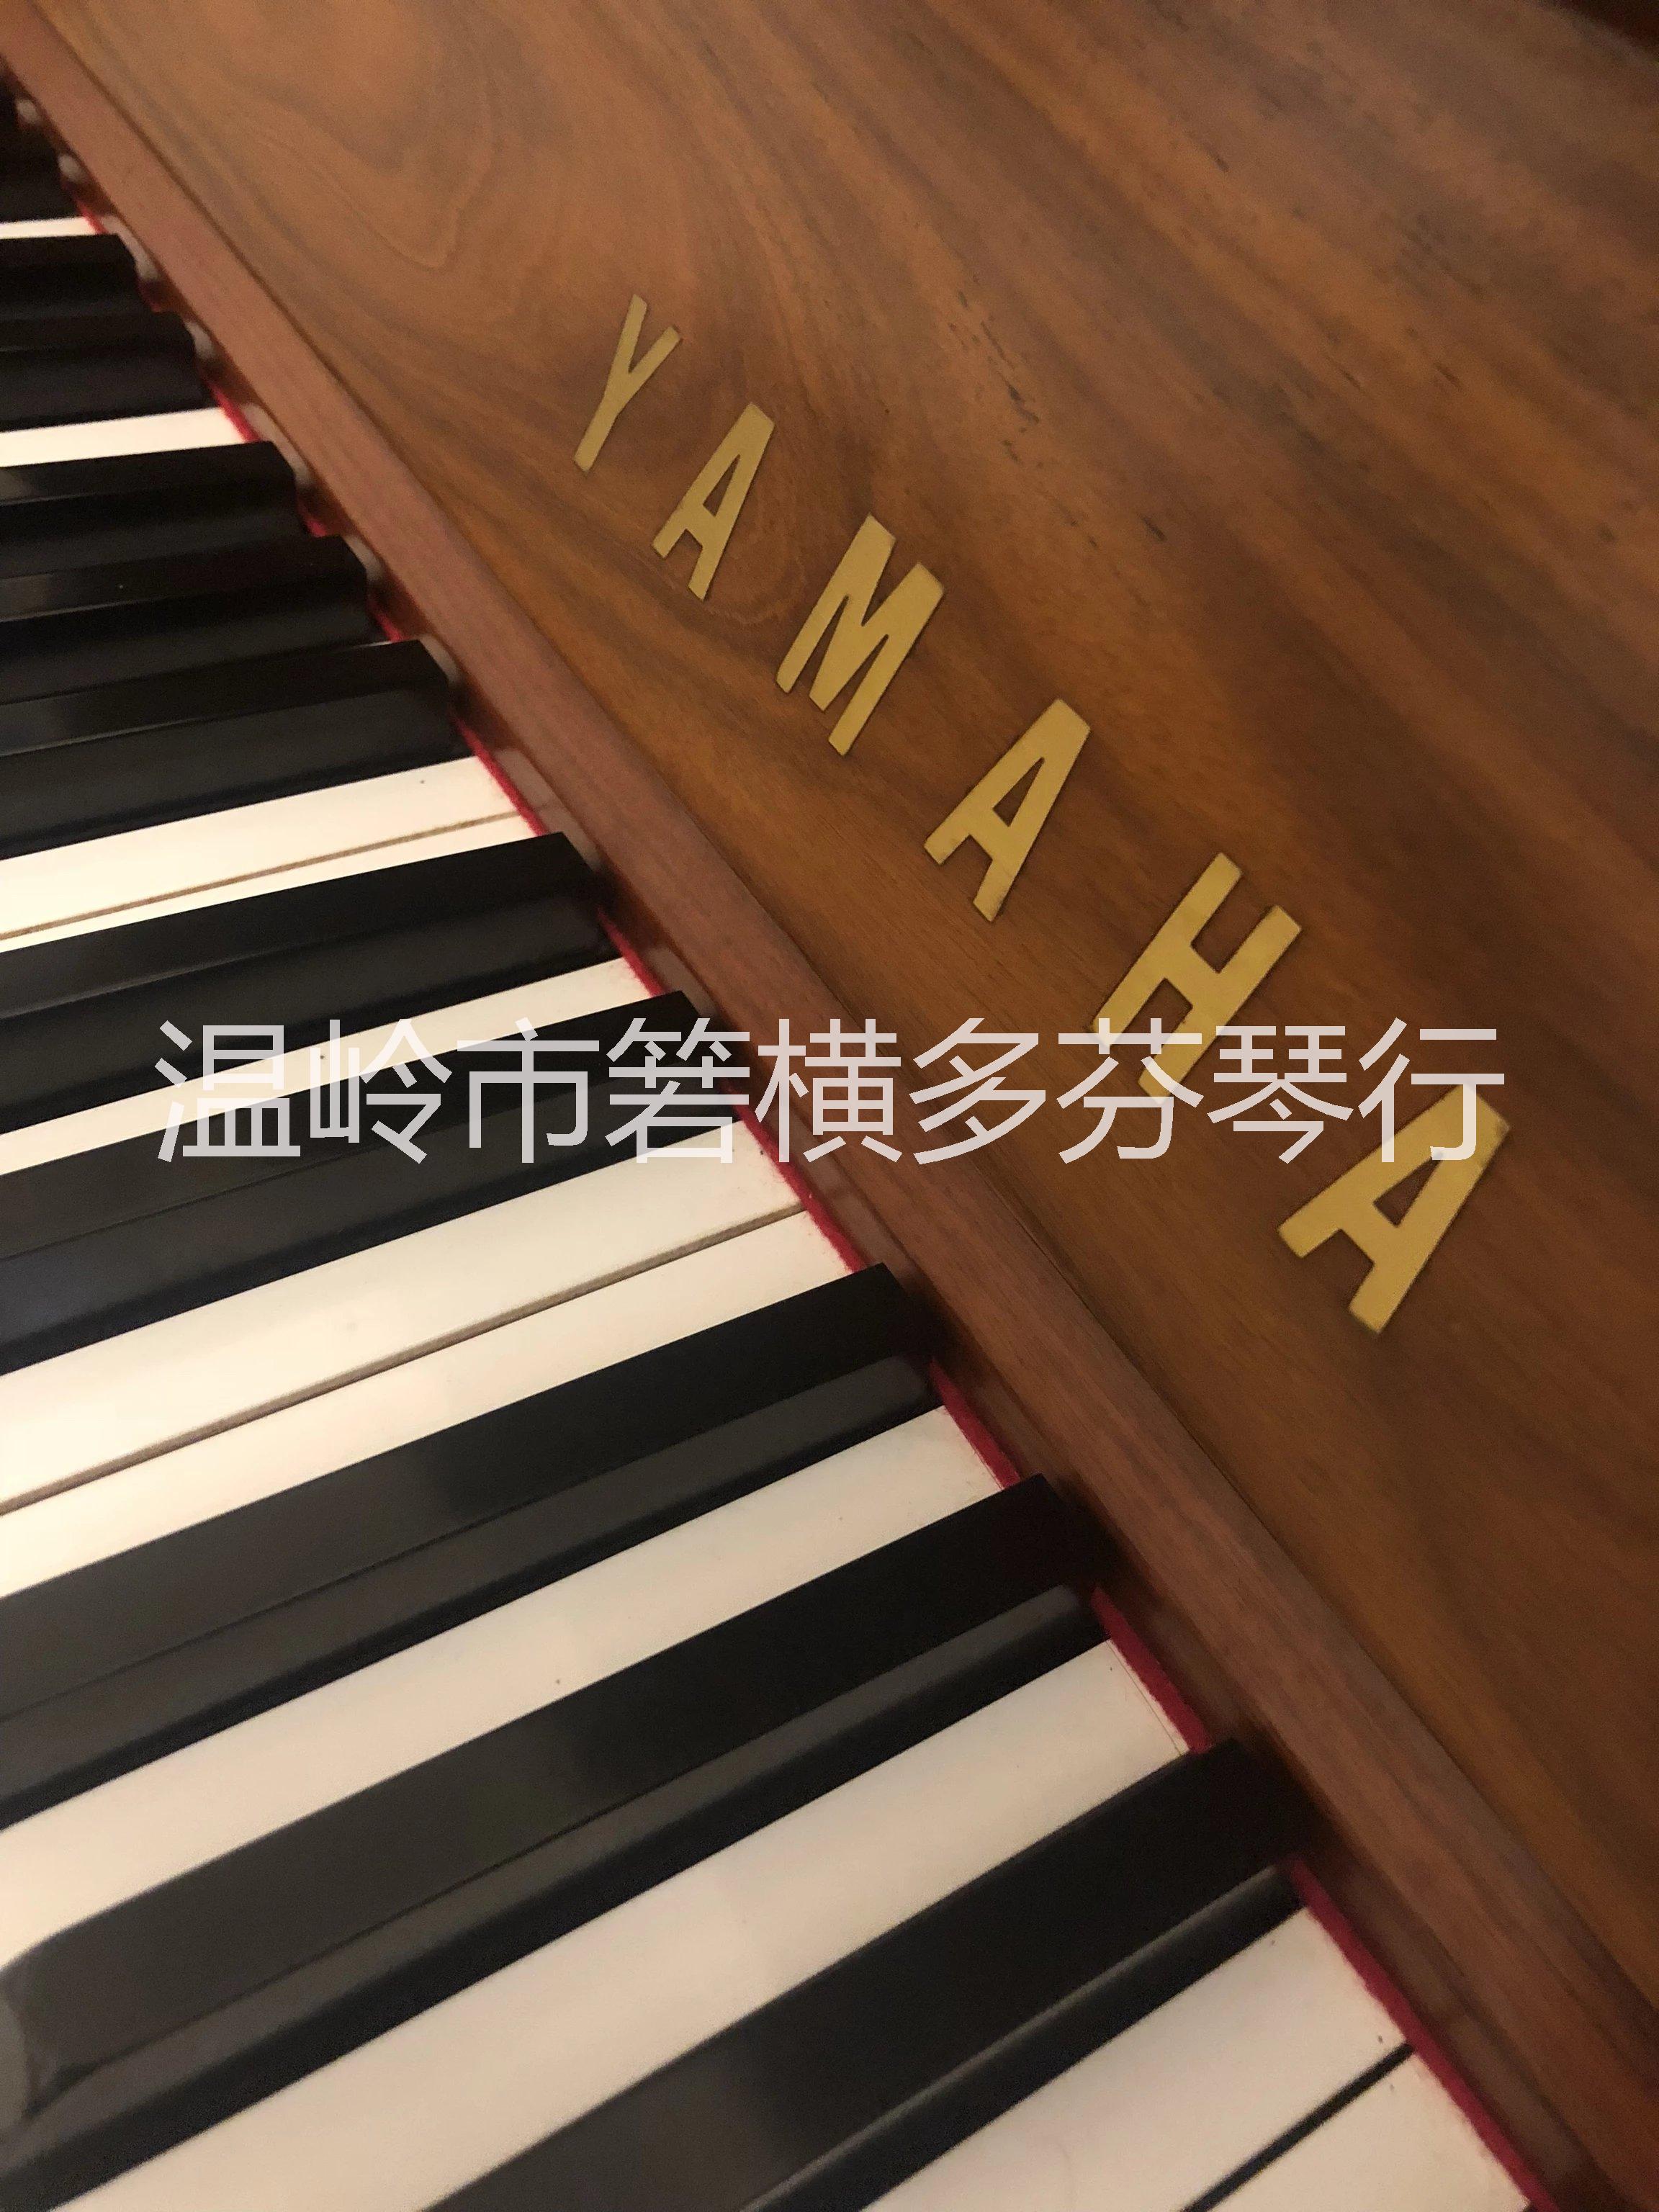 日本雅马哈钢琴型号W 101图片